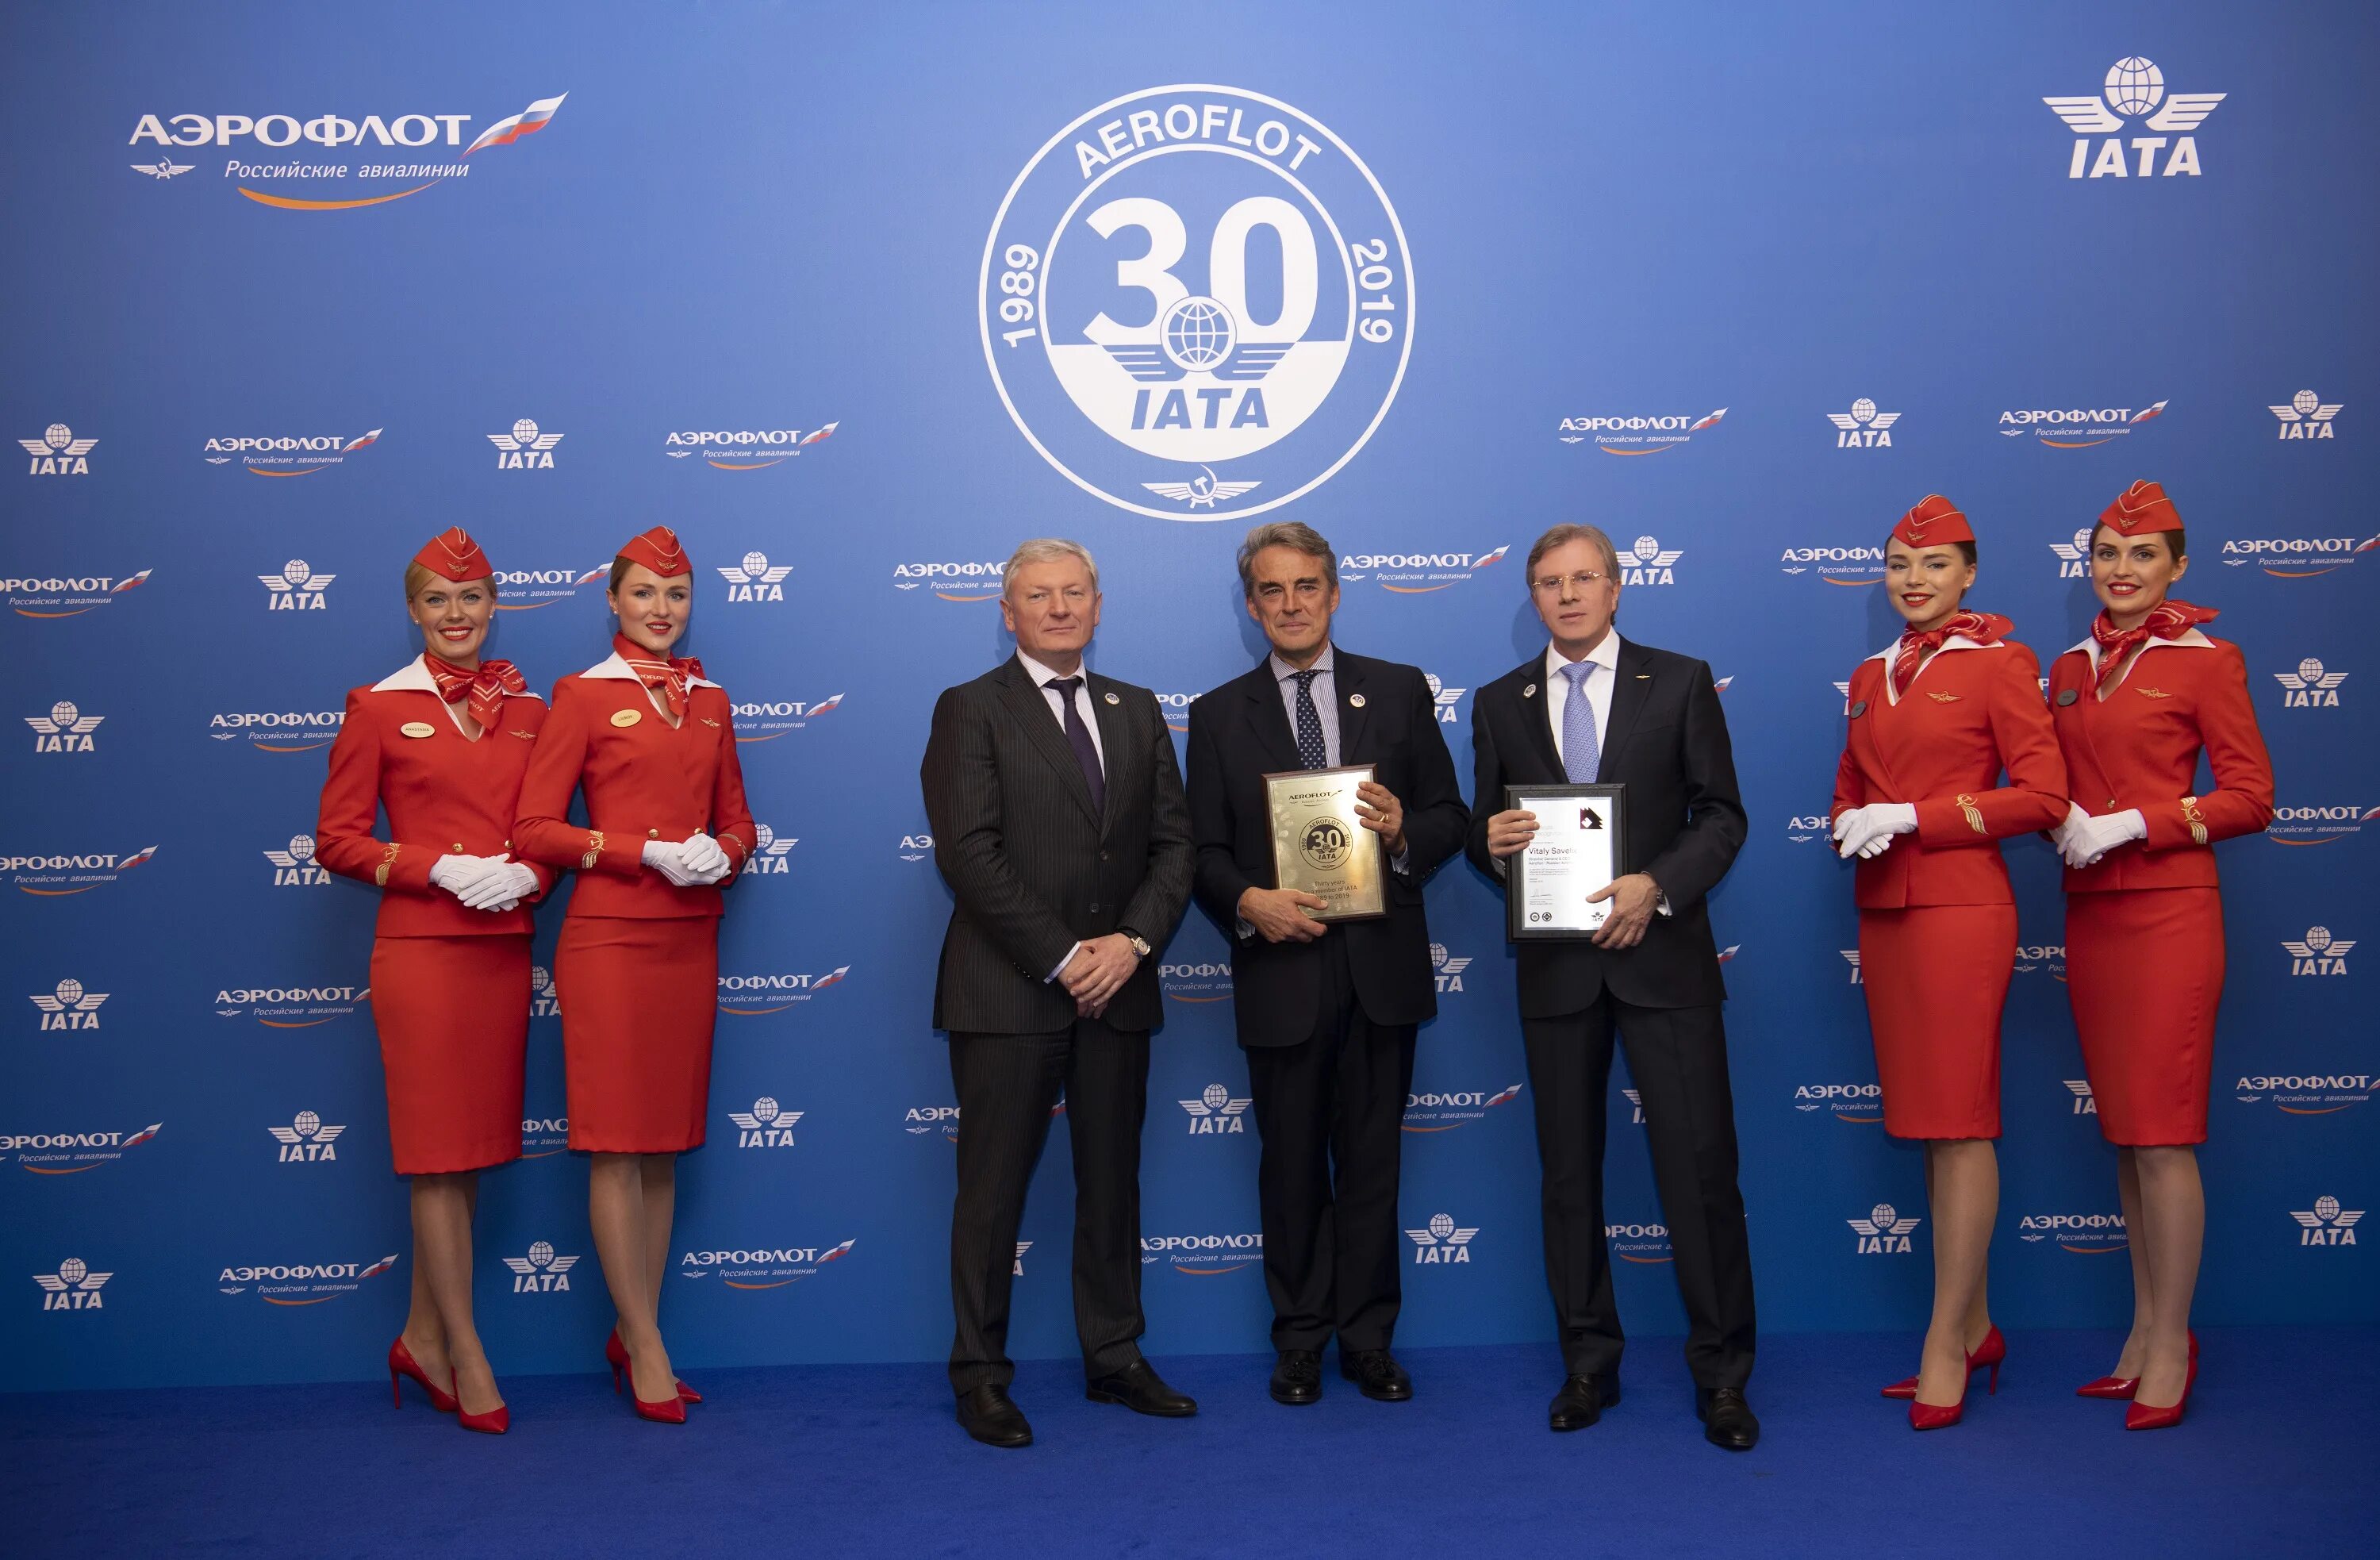 Aeroflot 2024. Представитель Аэрофлота. Аэрофлот - российские авиалинии. ИАТА Международная Ассоциация воздушного транспорта. Международная Ассоциация авиаперевозчиков (IATA).